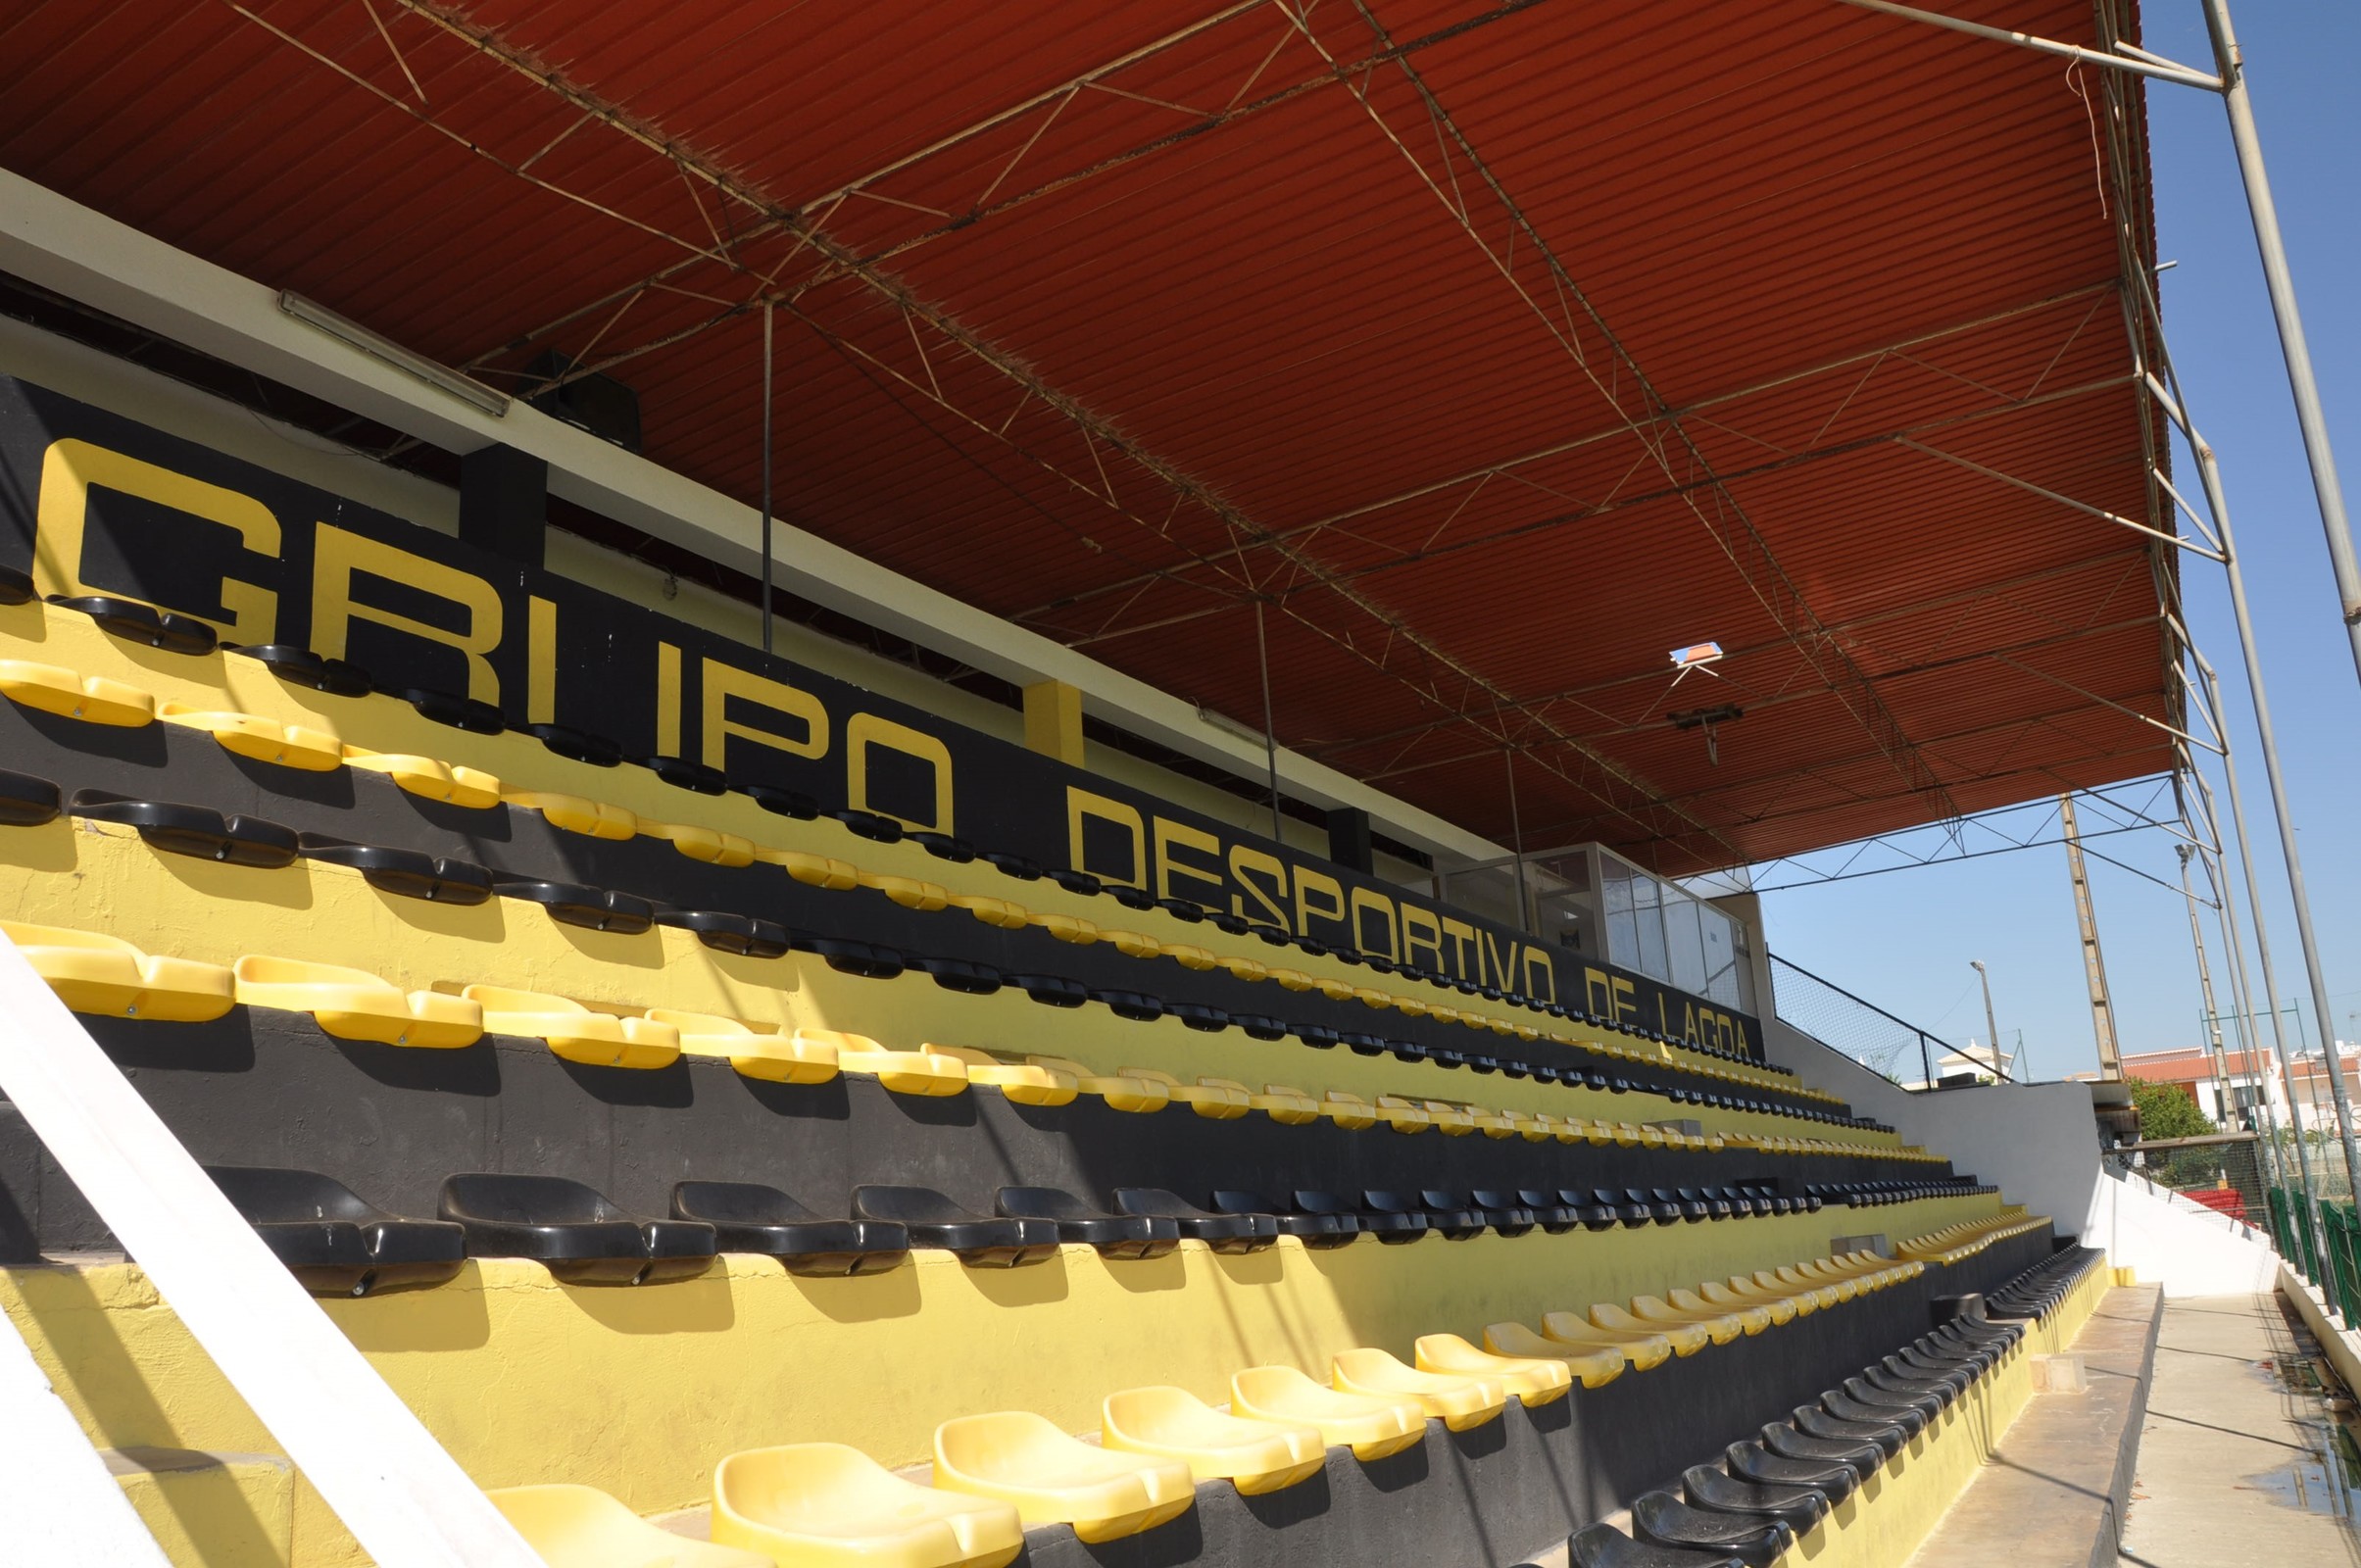 Estádio Capitão Josino da Costa